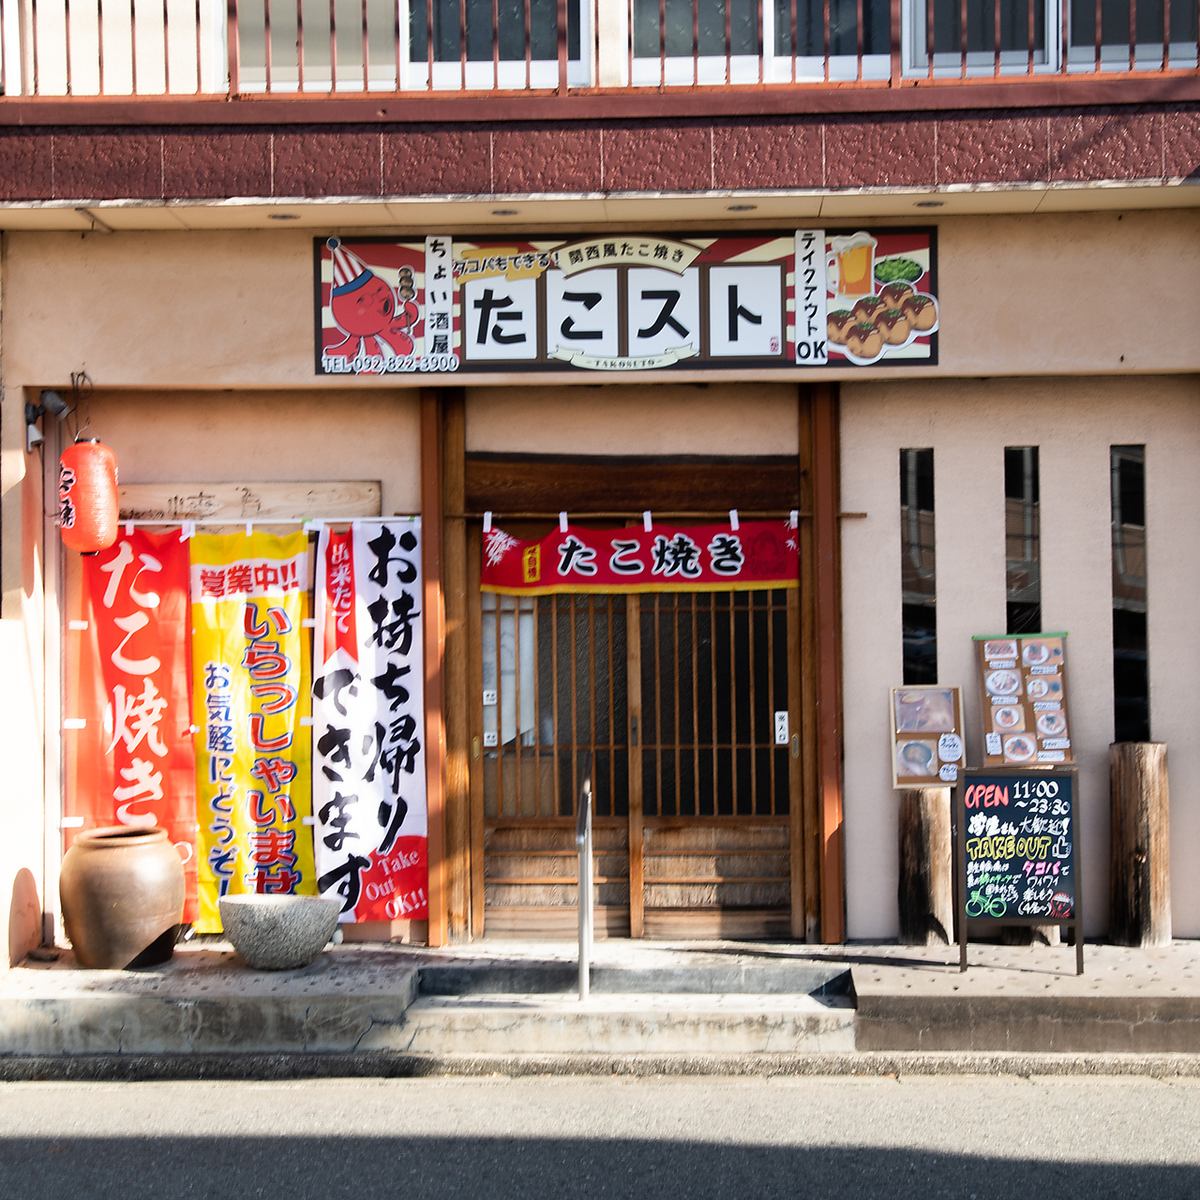 □ 후쿠오카에서 구운 호야호와 맛있는 간사이 타코야키를 즐길 수 있습니다 □